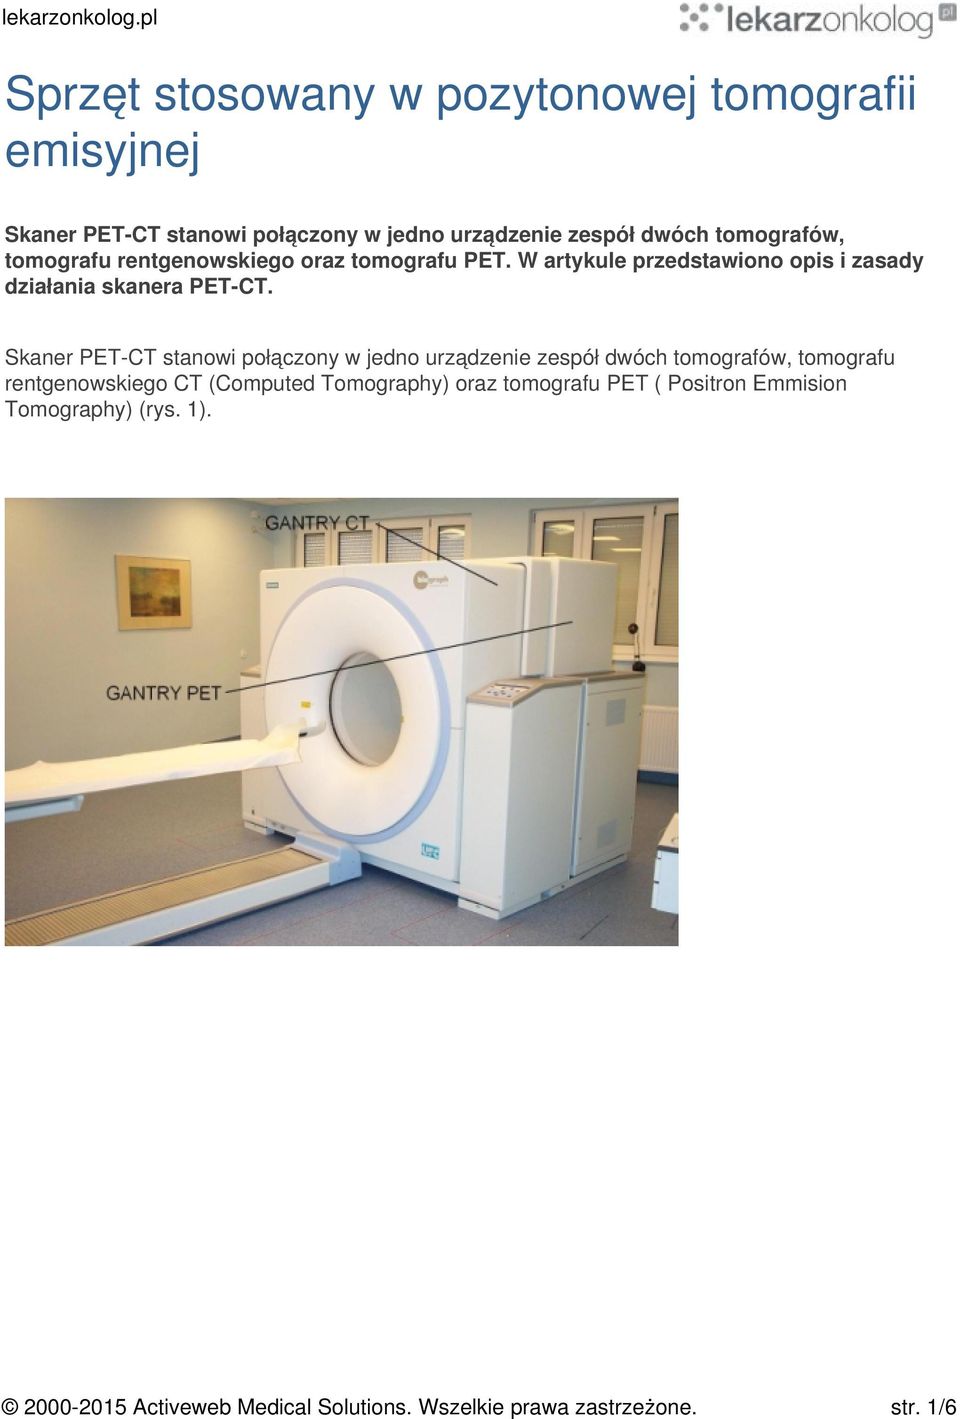 Skaner PET-CT stanowi połączony w jedno urządzenie zespół dwóch tomografów, tomografu rentgenowskiego CT (Computed